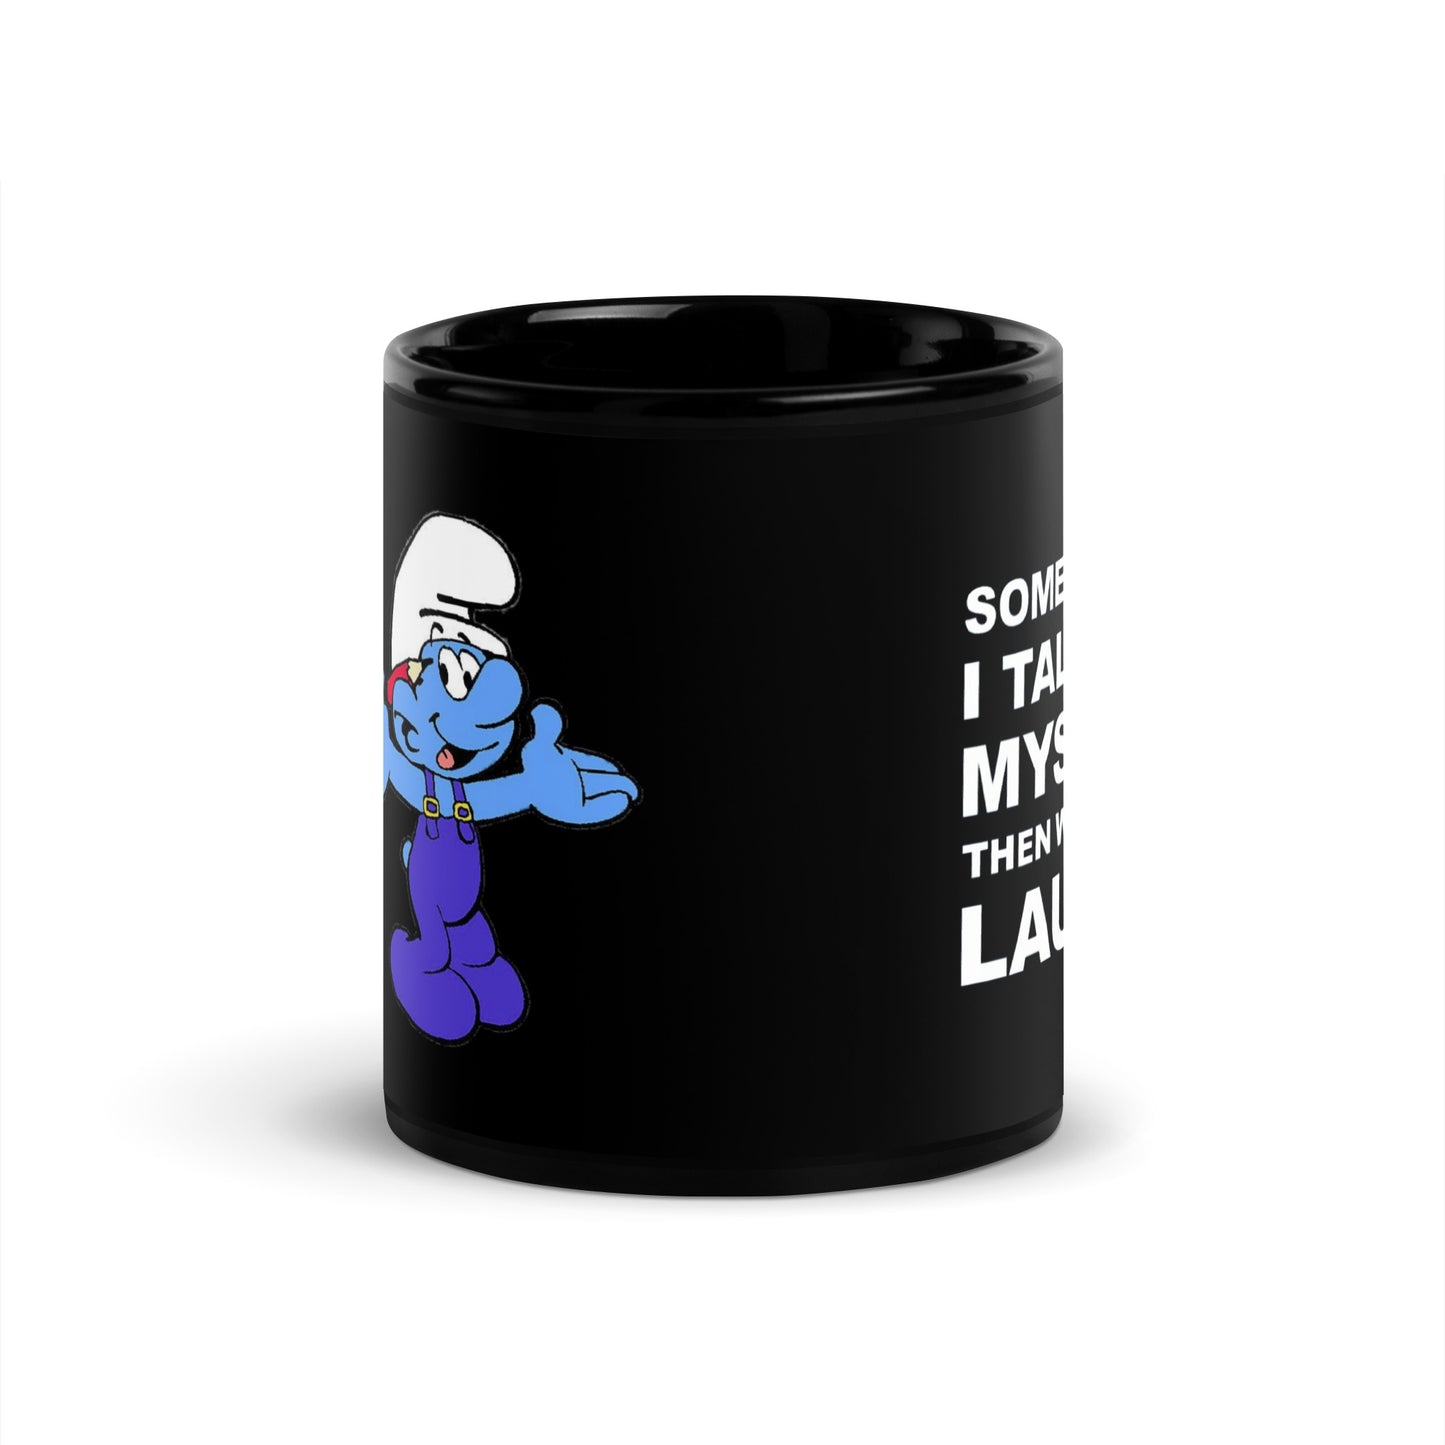 Smurf's Mug 'talk to myself' funny ceramic coffee mug.